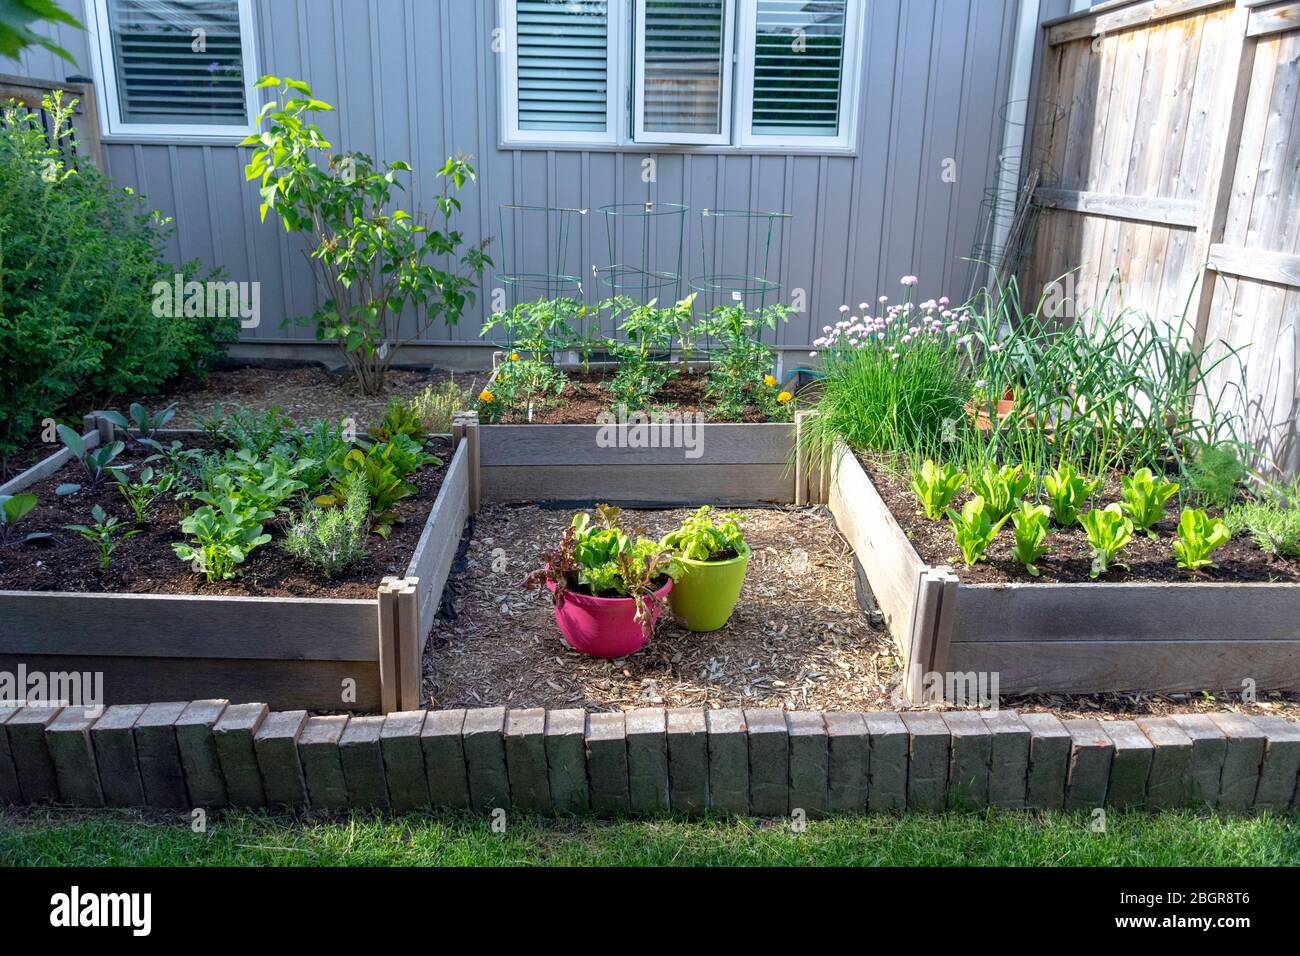 Teil der Grow Your Own Food Trend, dieser Garten Gemüsegarten im Hinterhof enthält große Hochbeete für den Anbau von Gemüse und Kräutern den ganzen Sommer. Stockfoto